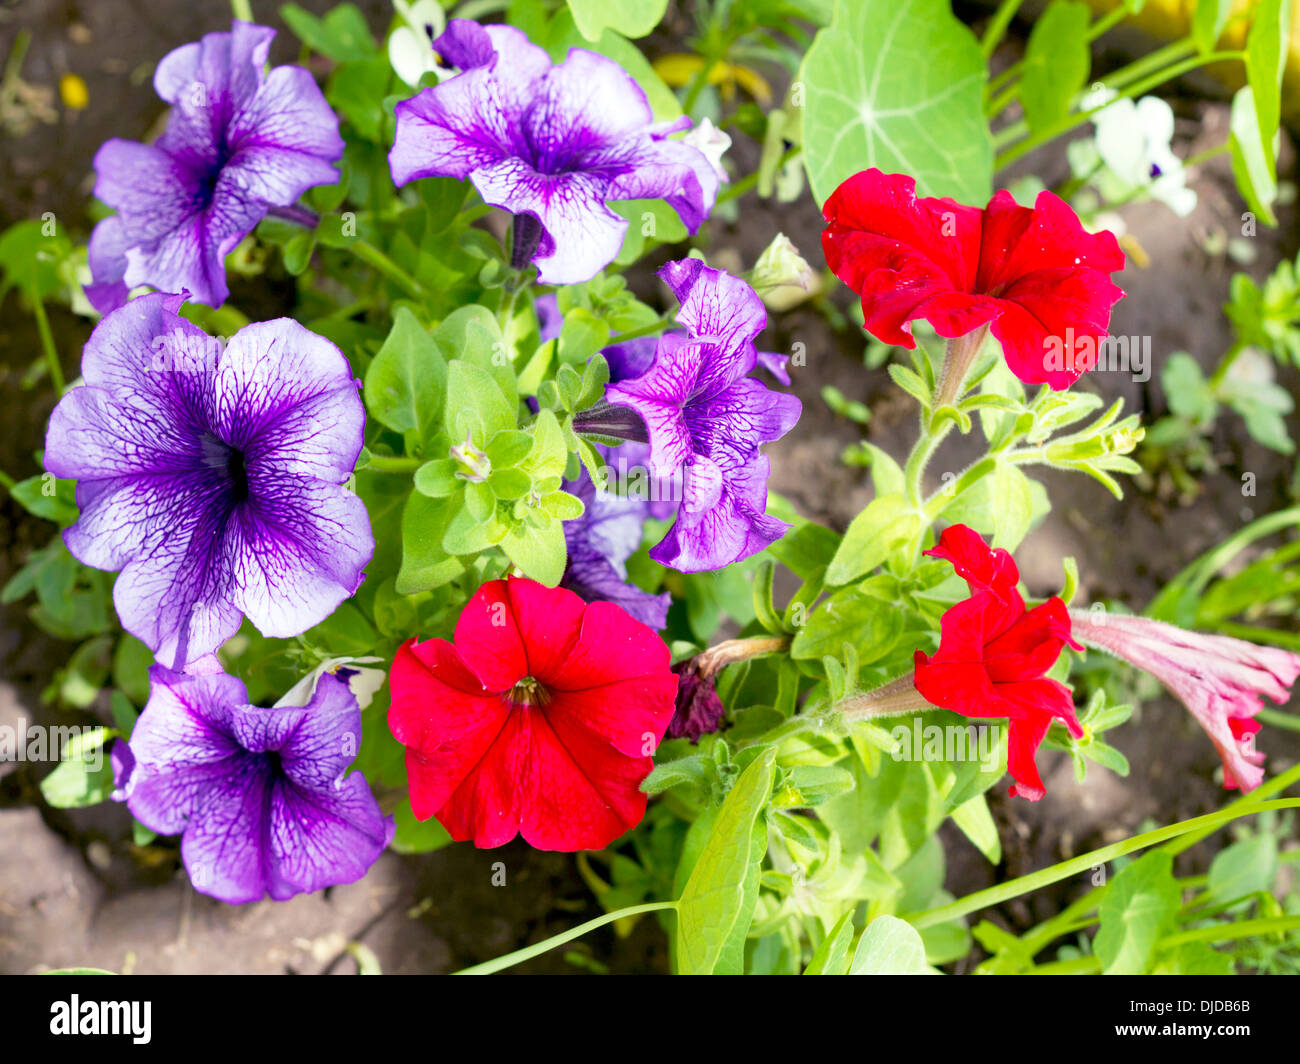 Imagen petunia parterres de rojo y violeta. Foto de stock